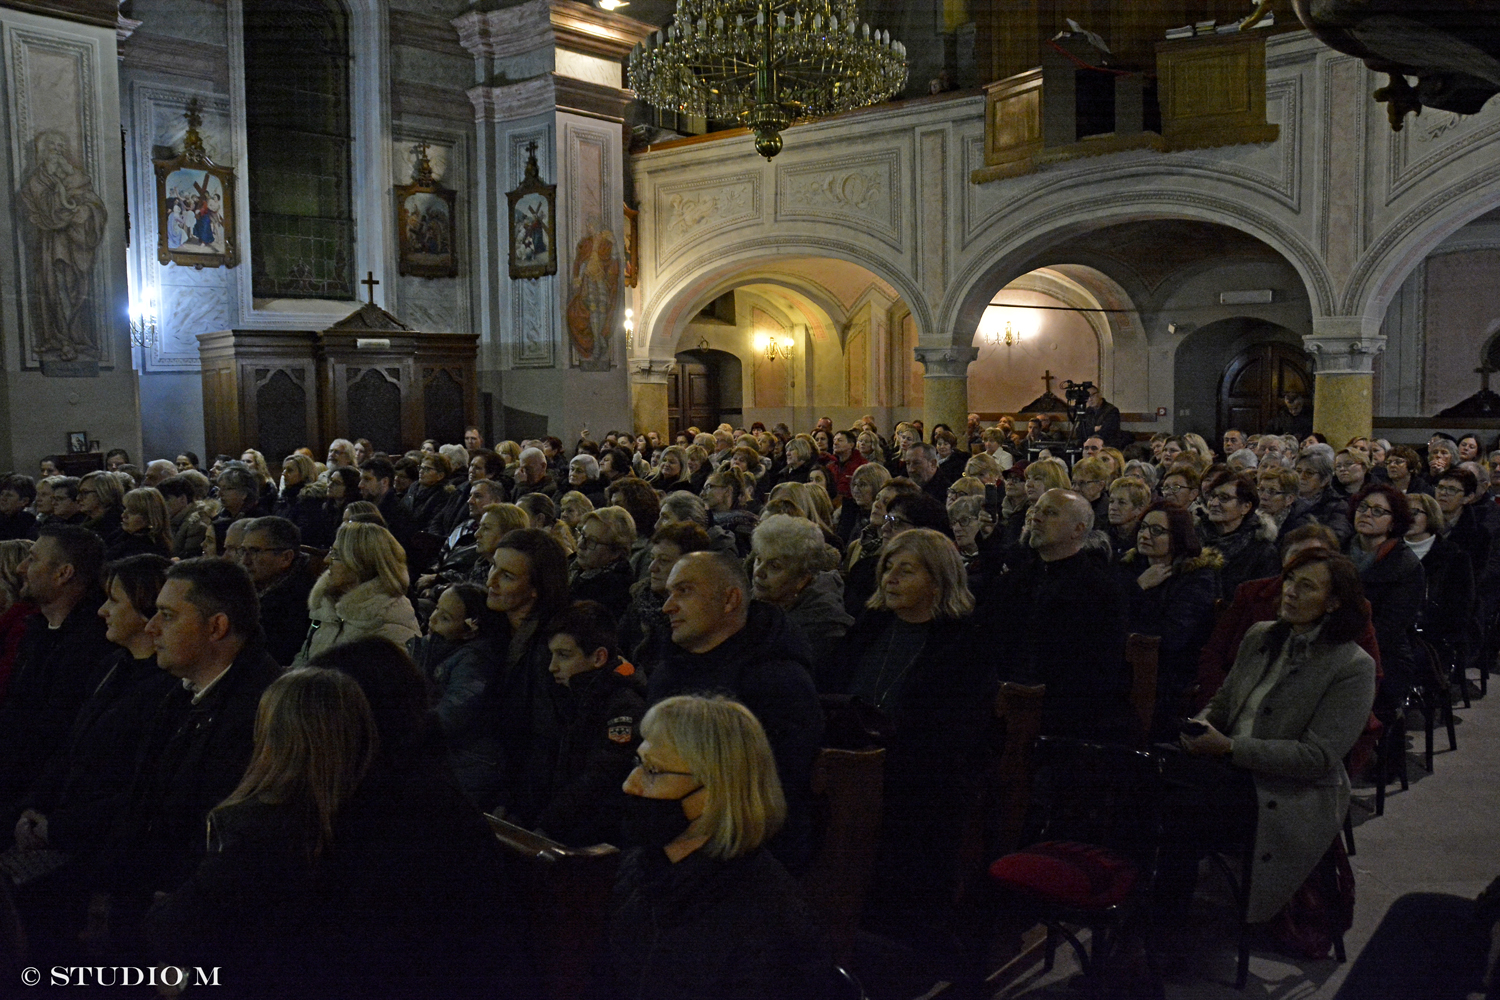 Božićni koncert "U susret Božiću" - Ivana i Marija Husar, Prelog, Crkva svetog Jakoba, prosinac 2022